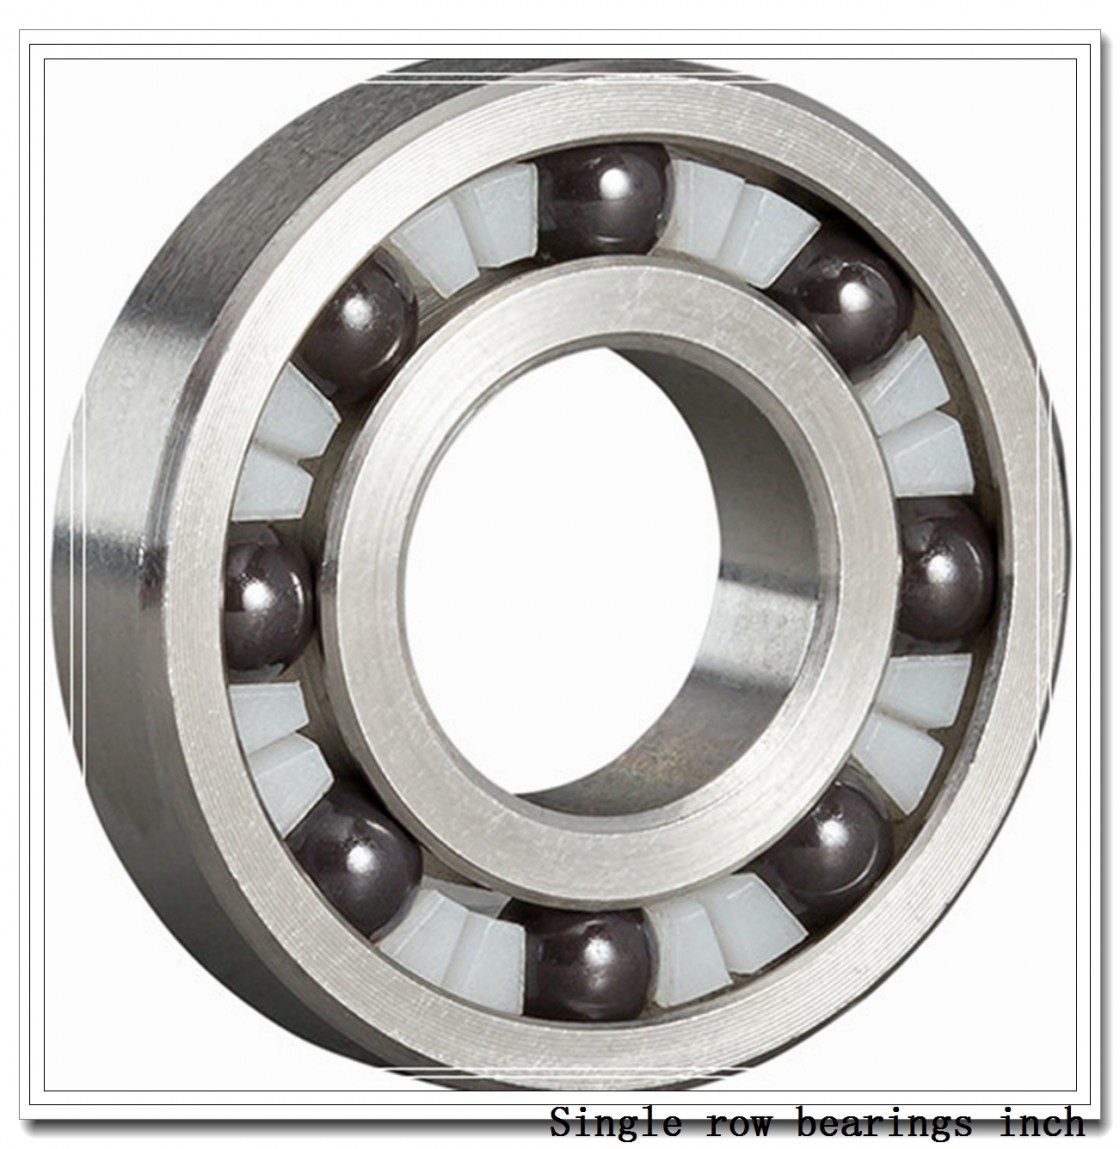 48686/48620 Single row bearings inch